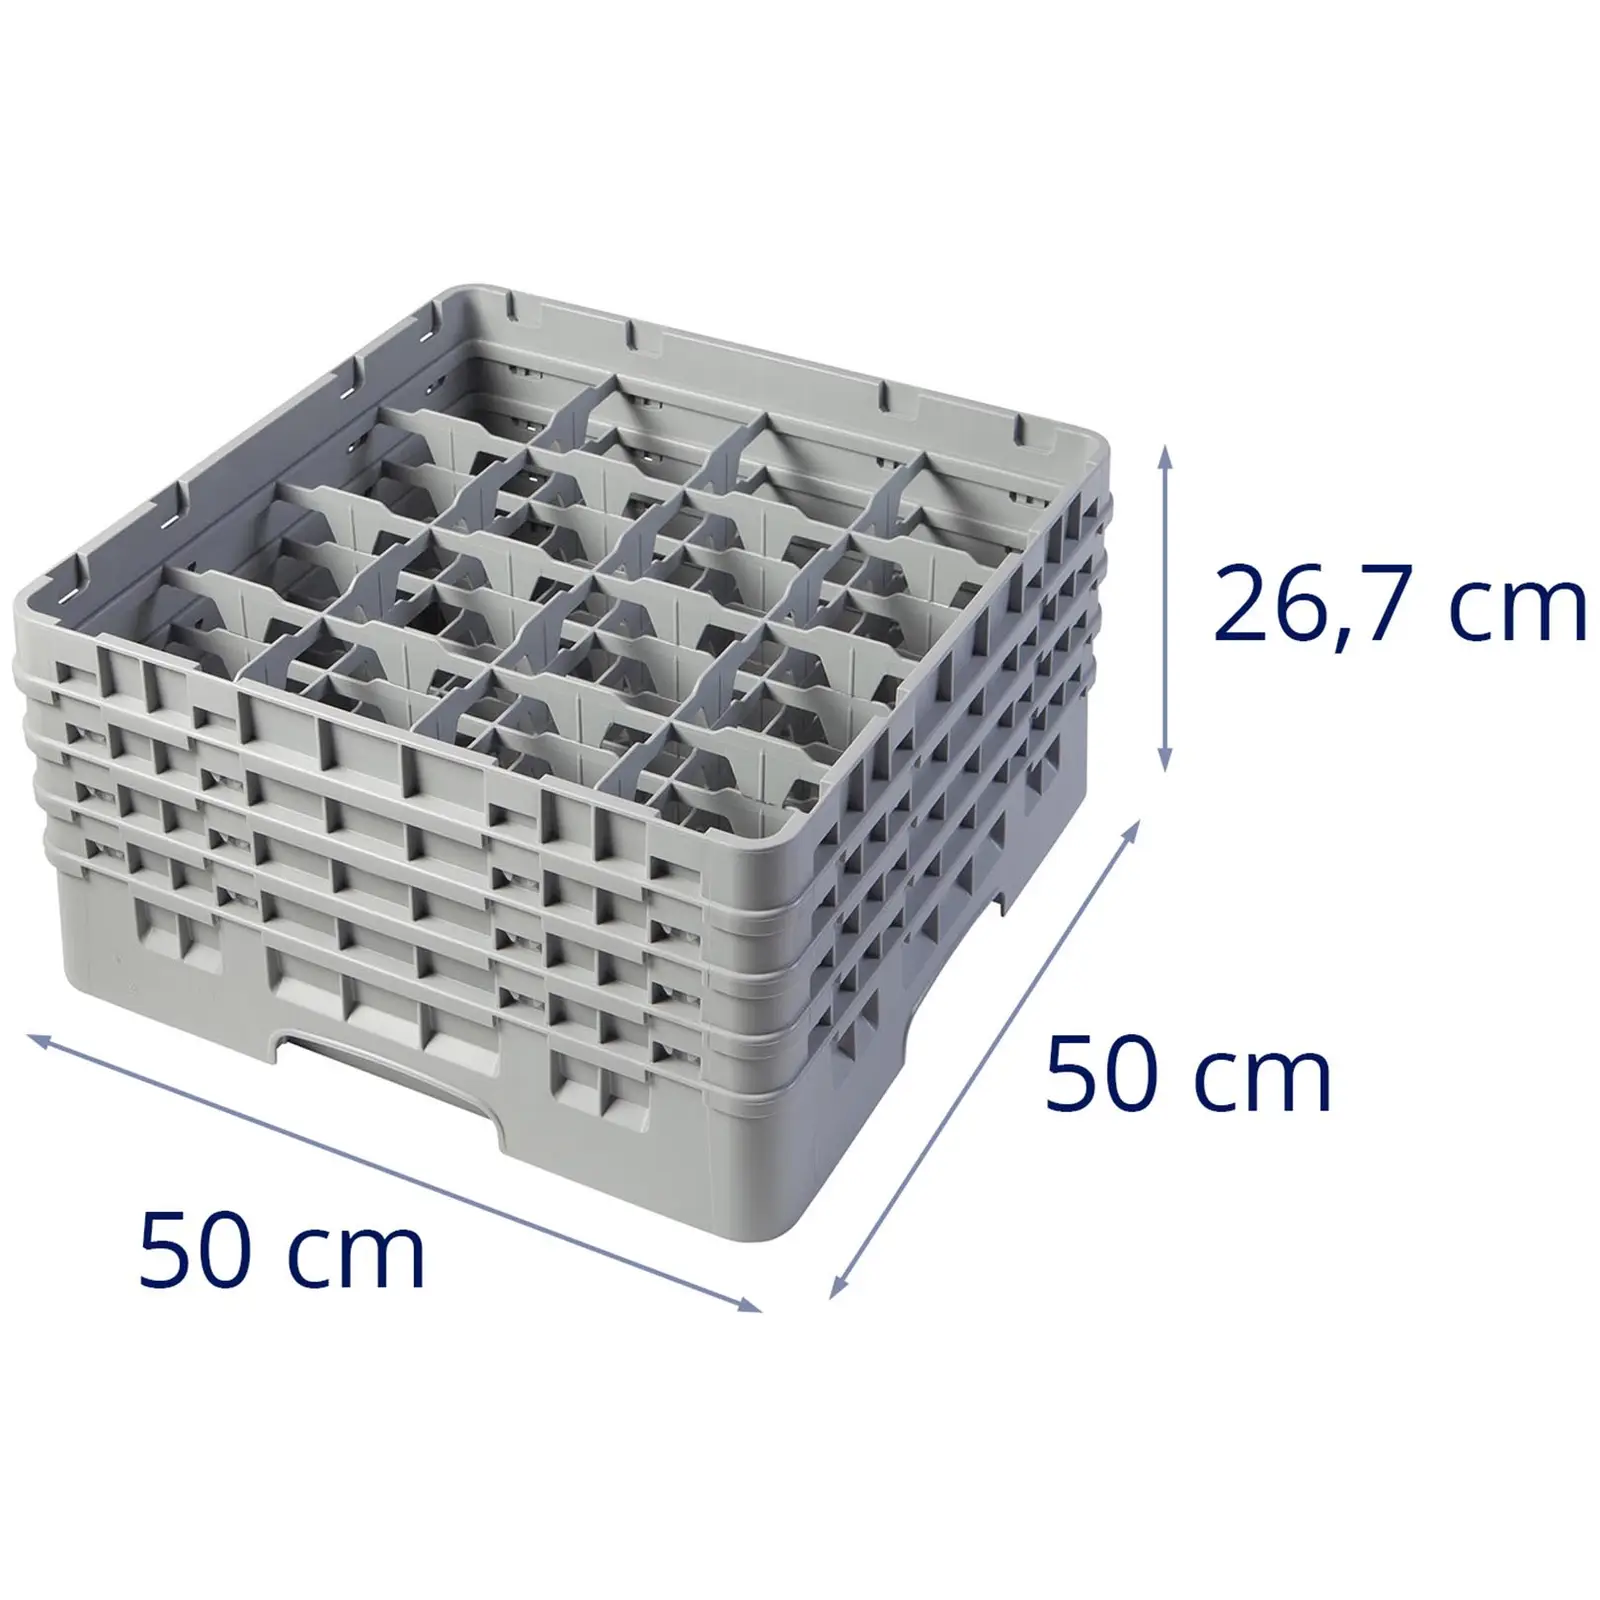 Opvaskekurv til glas til industriopvaskemaskine - 16 rum - 50 x 50 x 26,7 cm - glashøjde: 21,5 cm